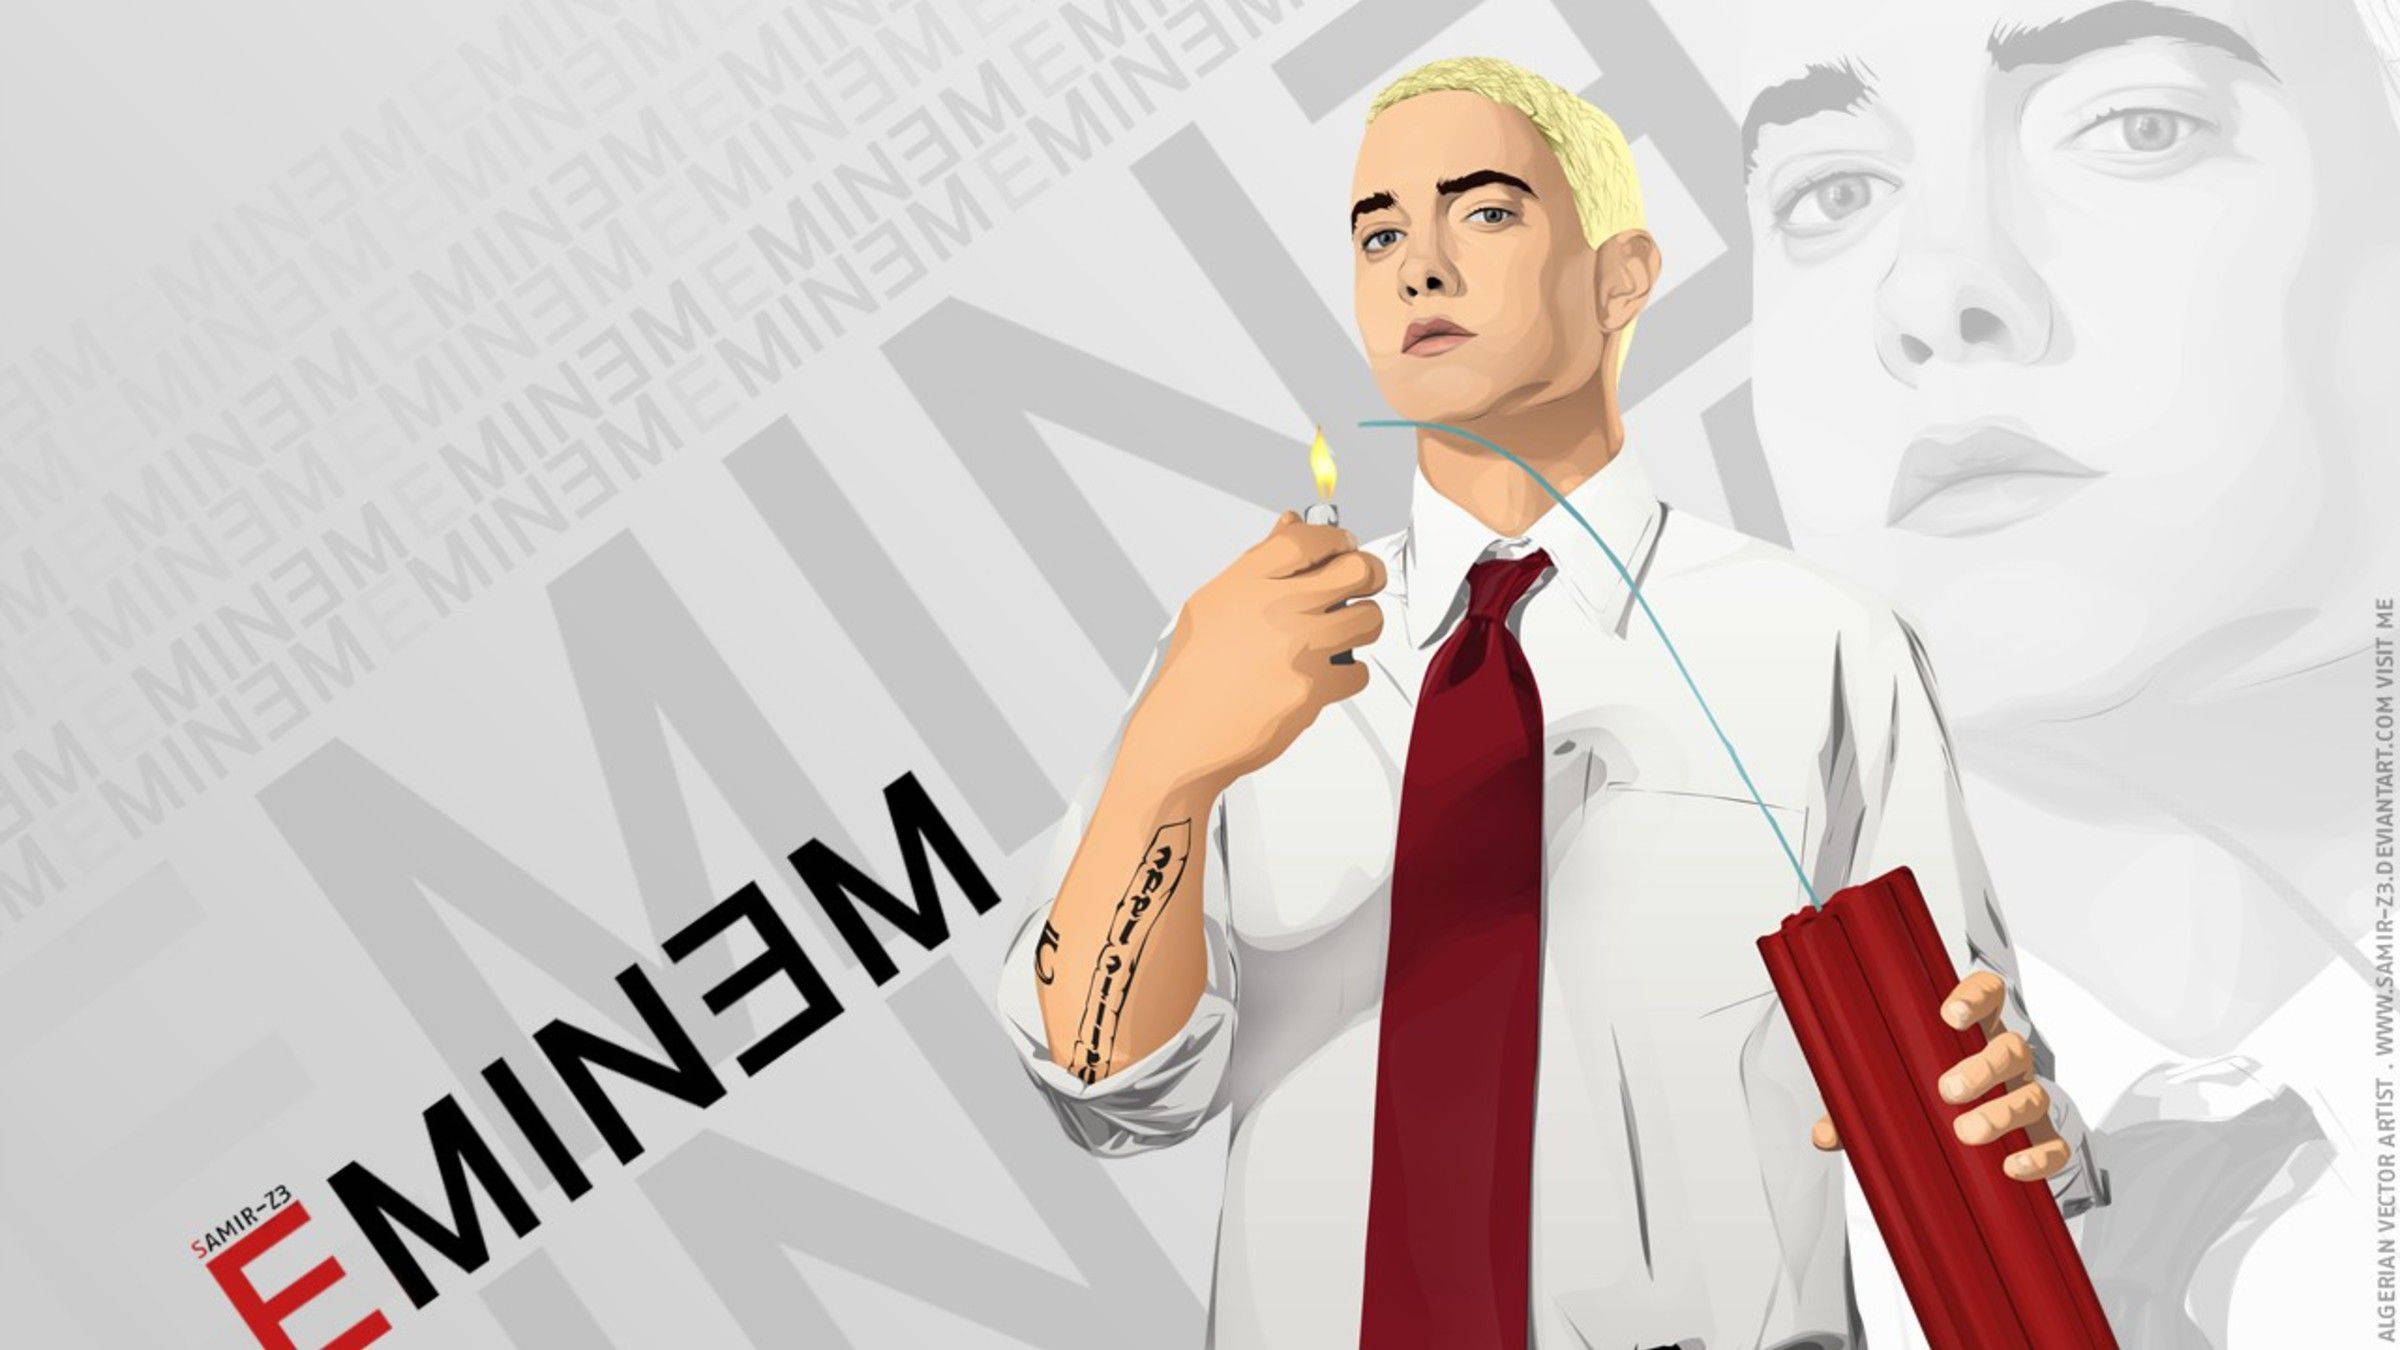 Download Hd Vector Art Eminem Wallpaper 